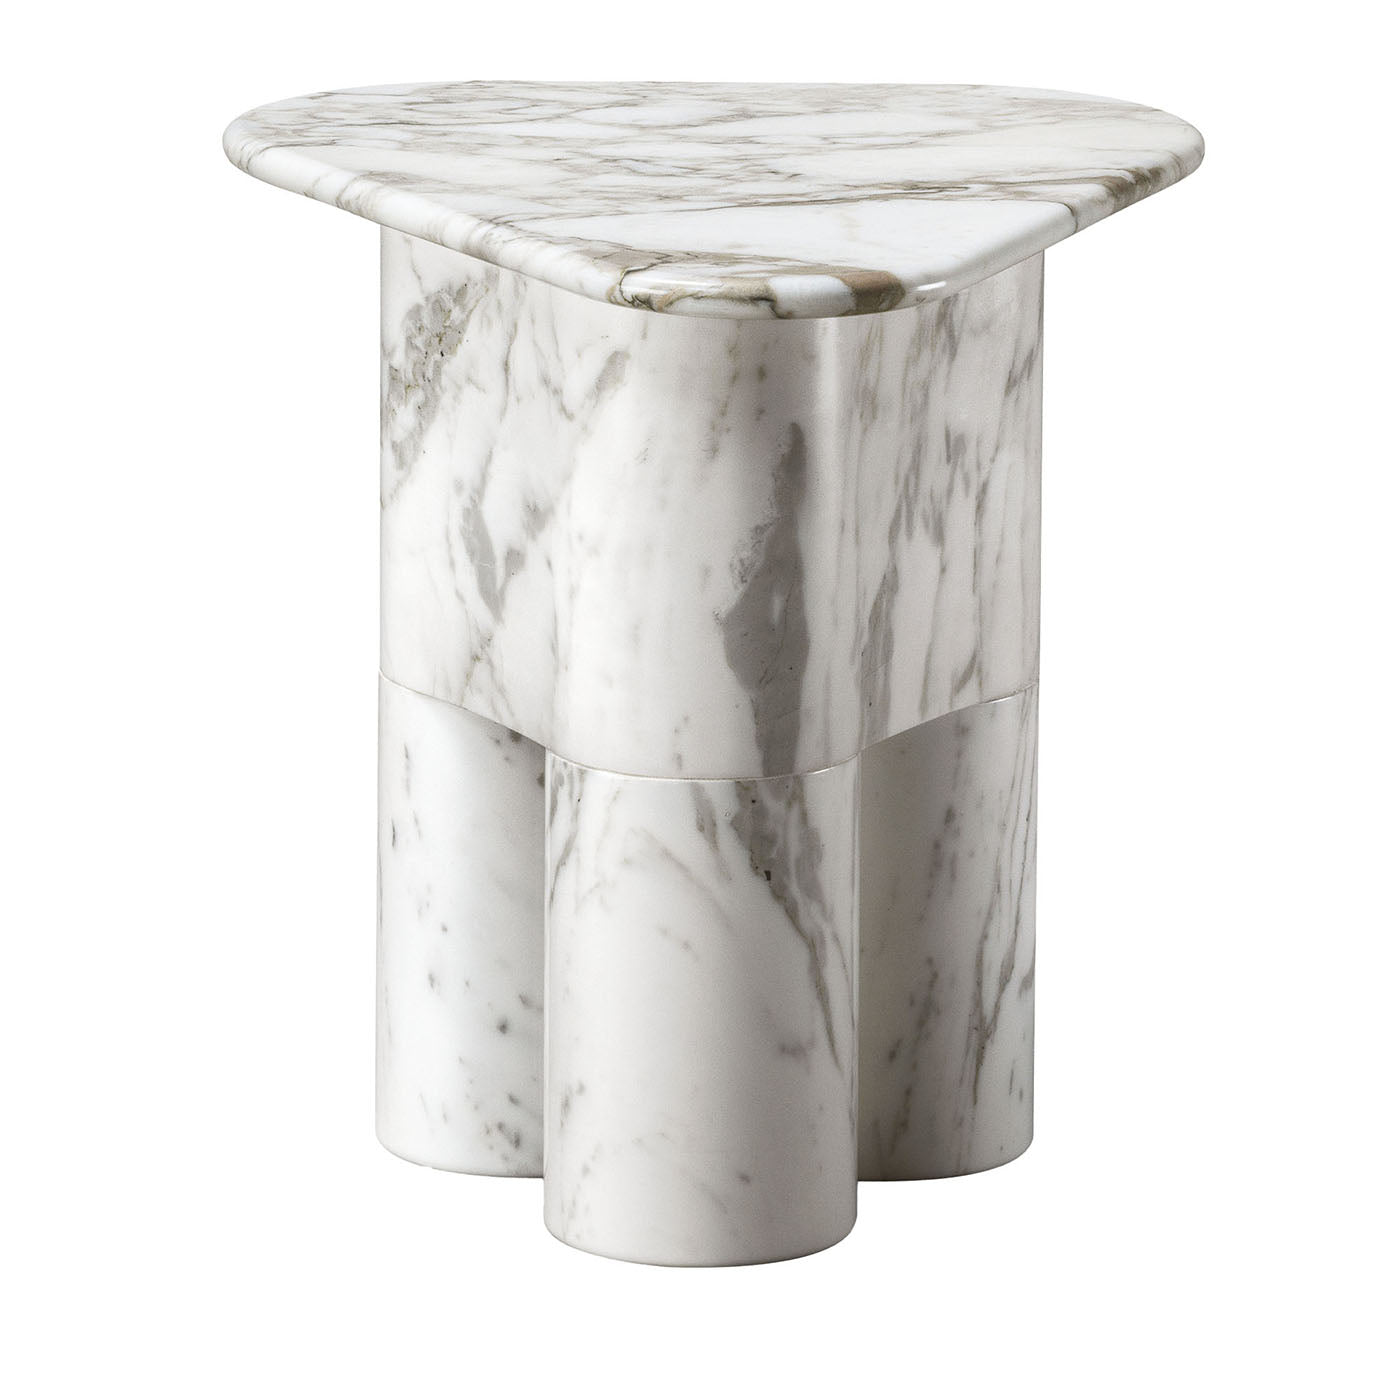 Petite table d'appoint en marbre blanc Tria par Lorenza Bozzoli - Vue principale